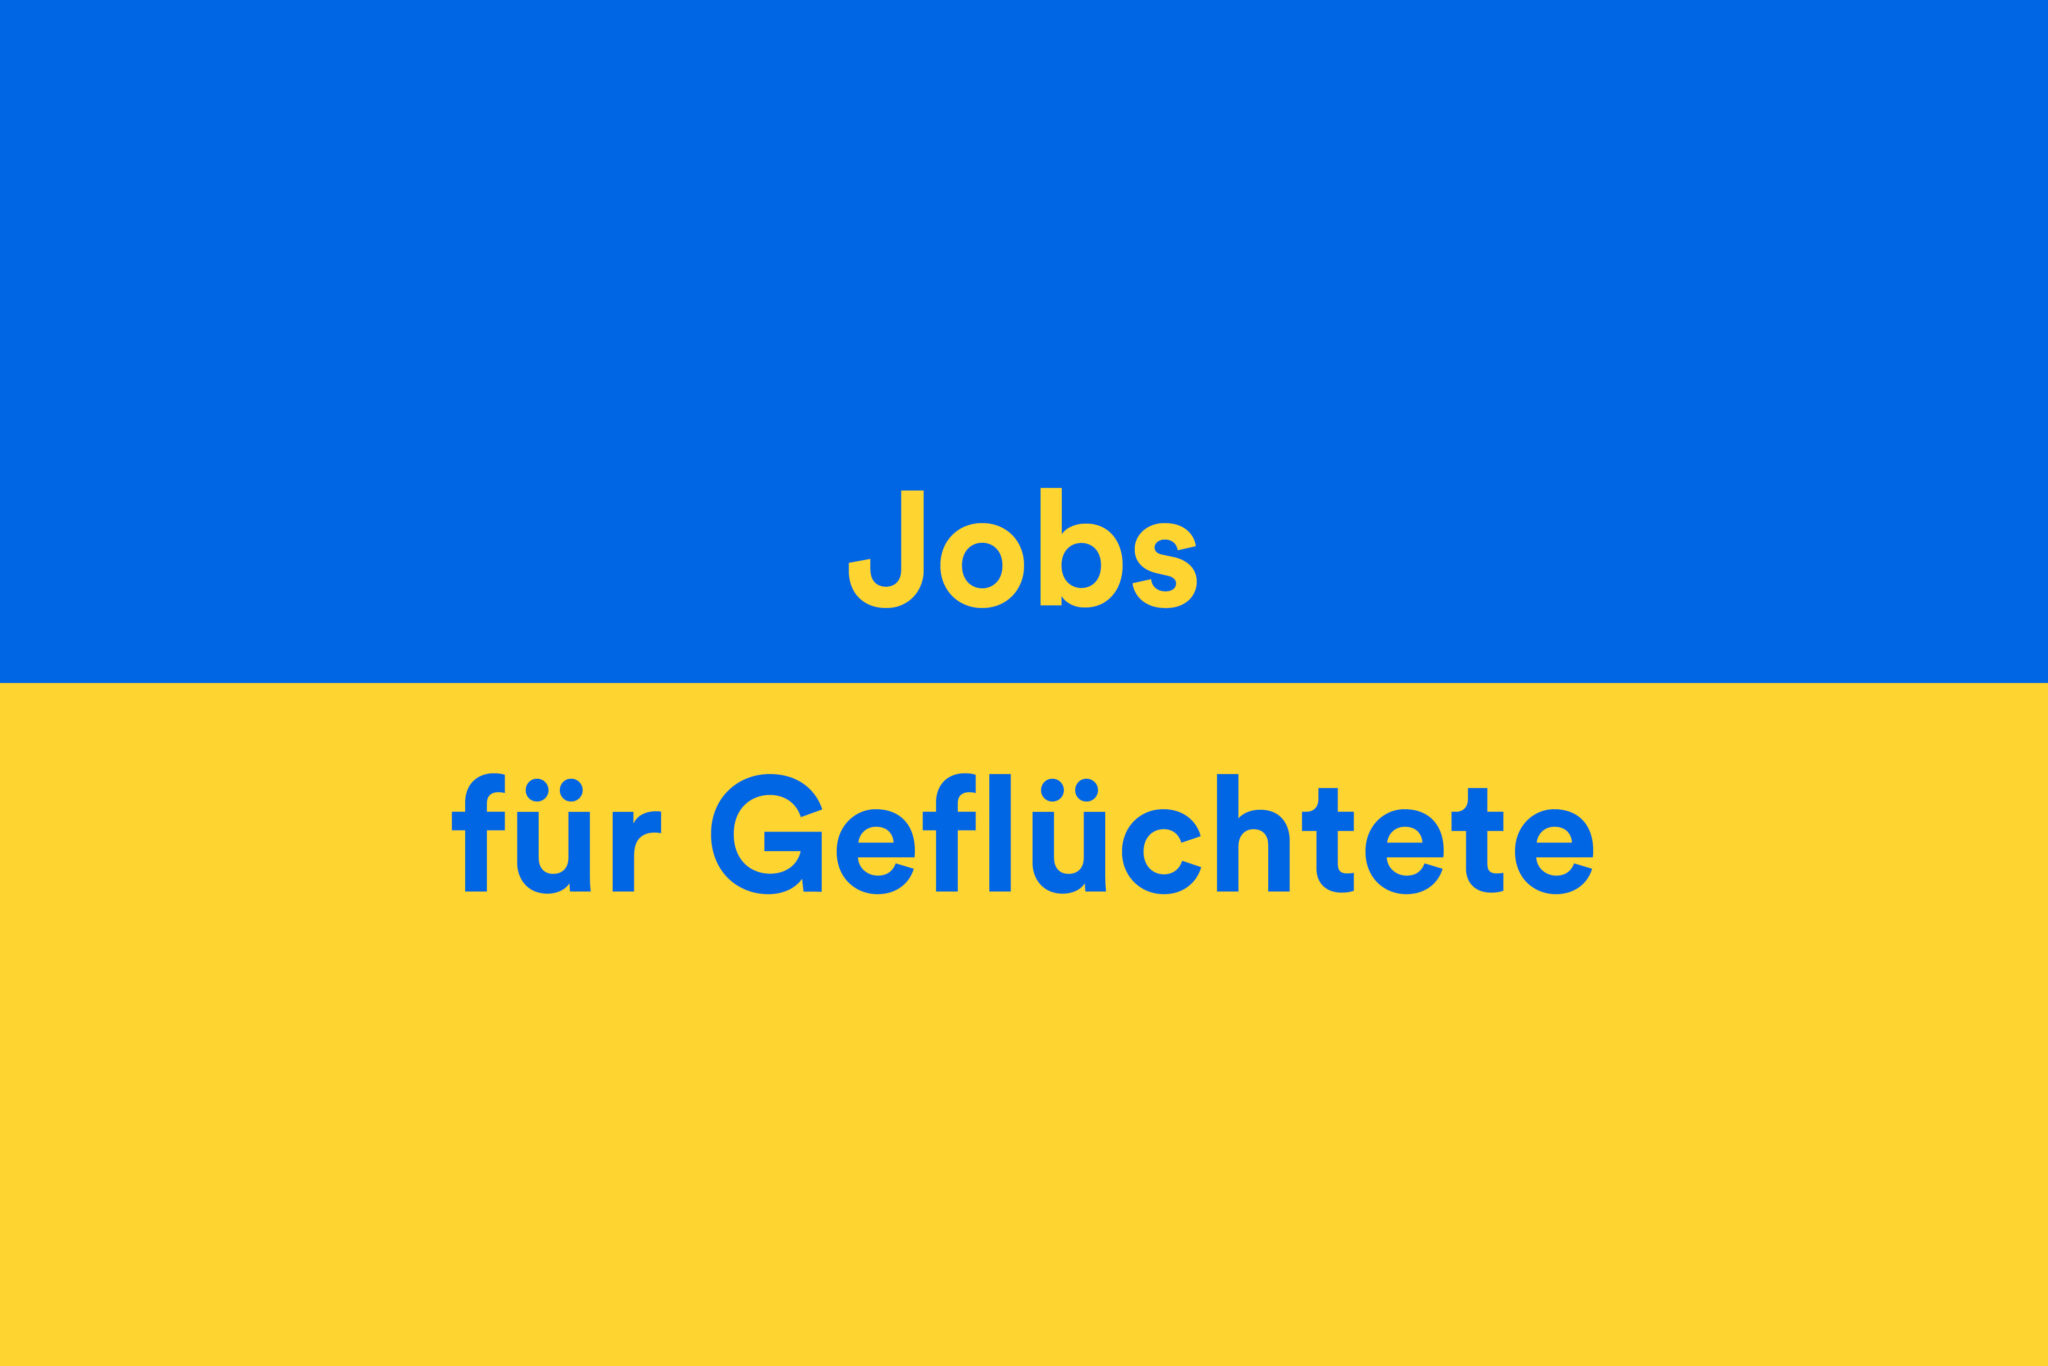 Ukraine_Jobs für Geflüchtete